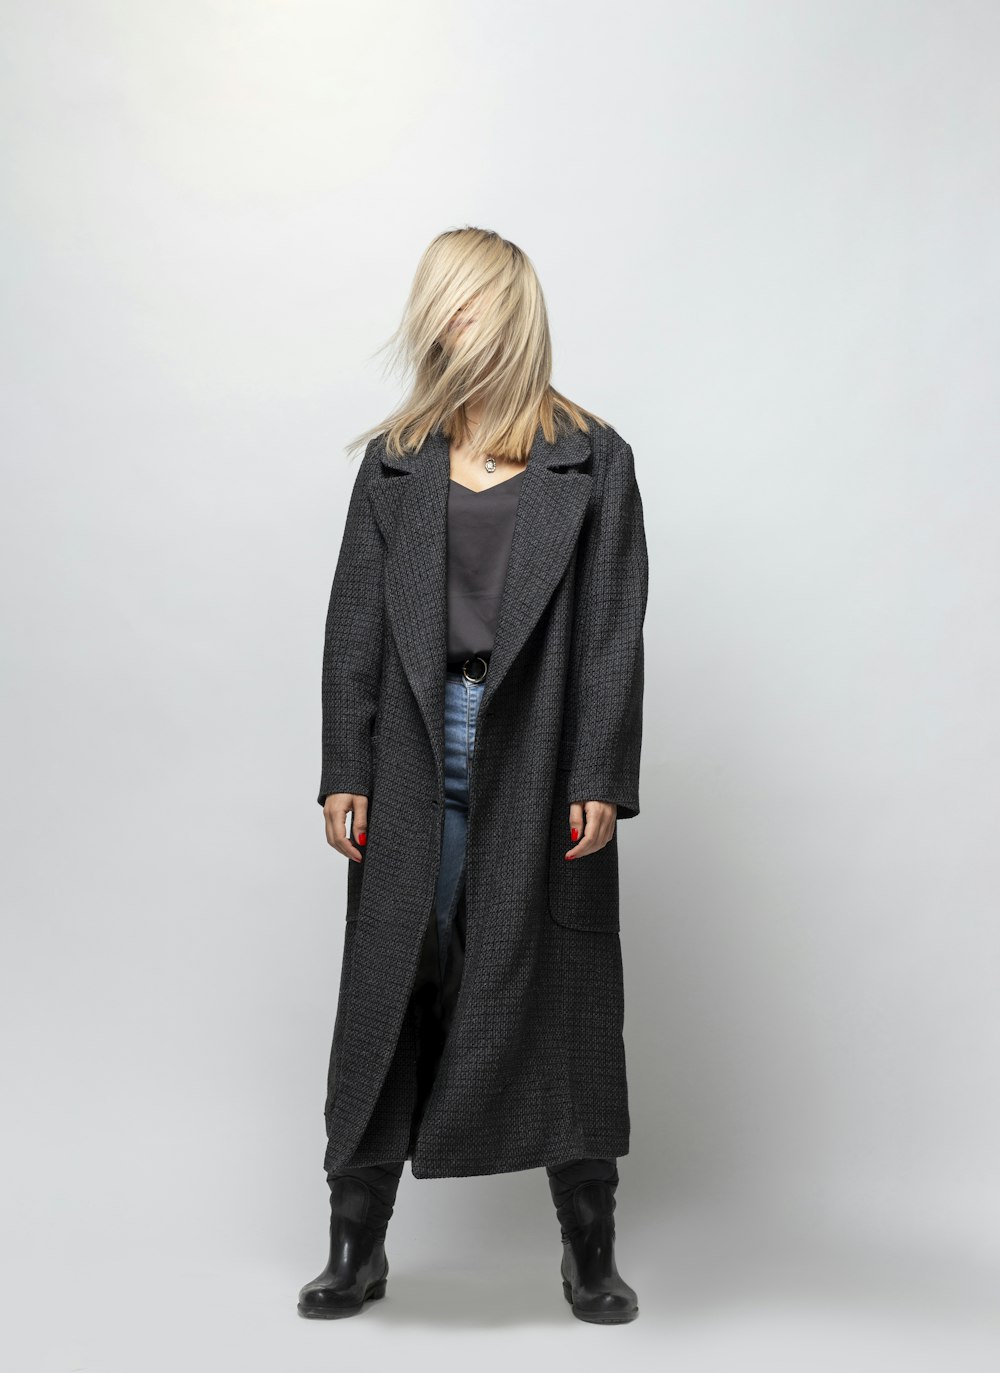 woman in gray coat standing